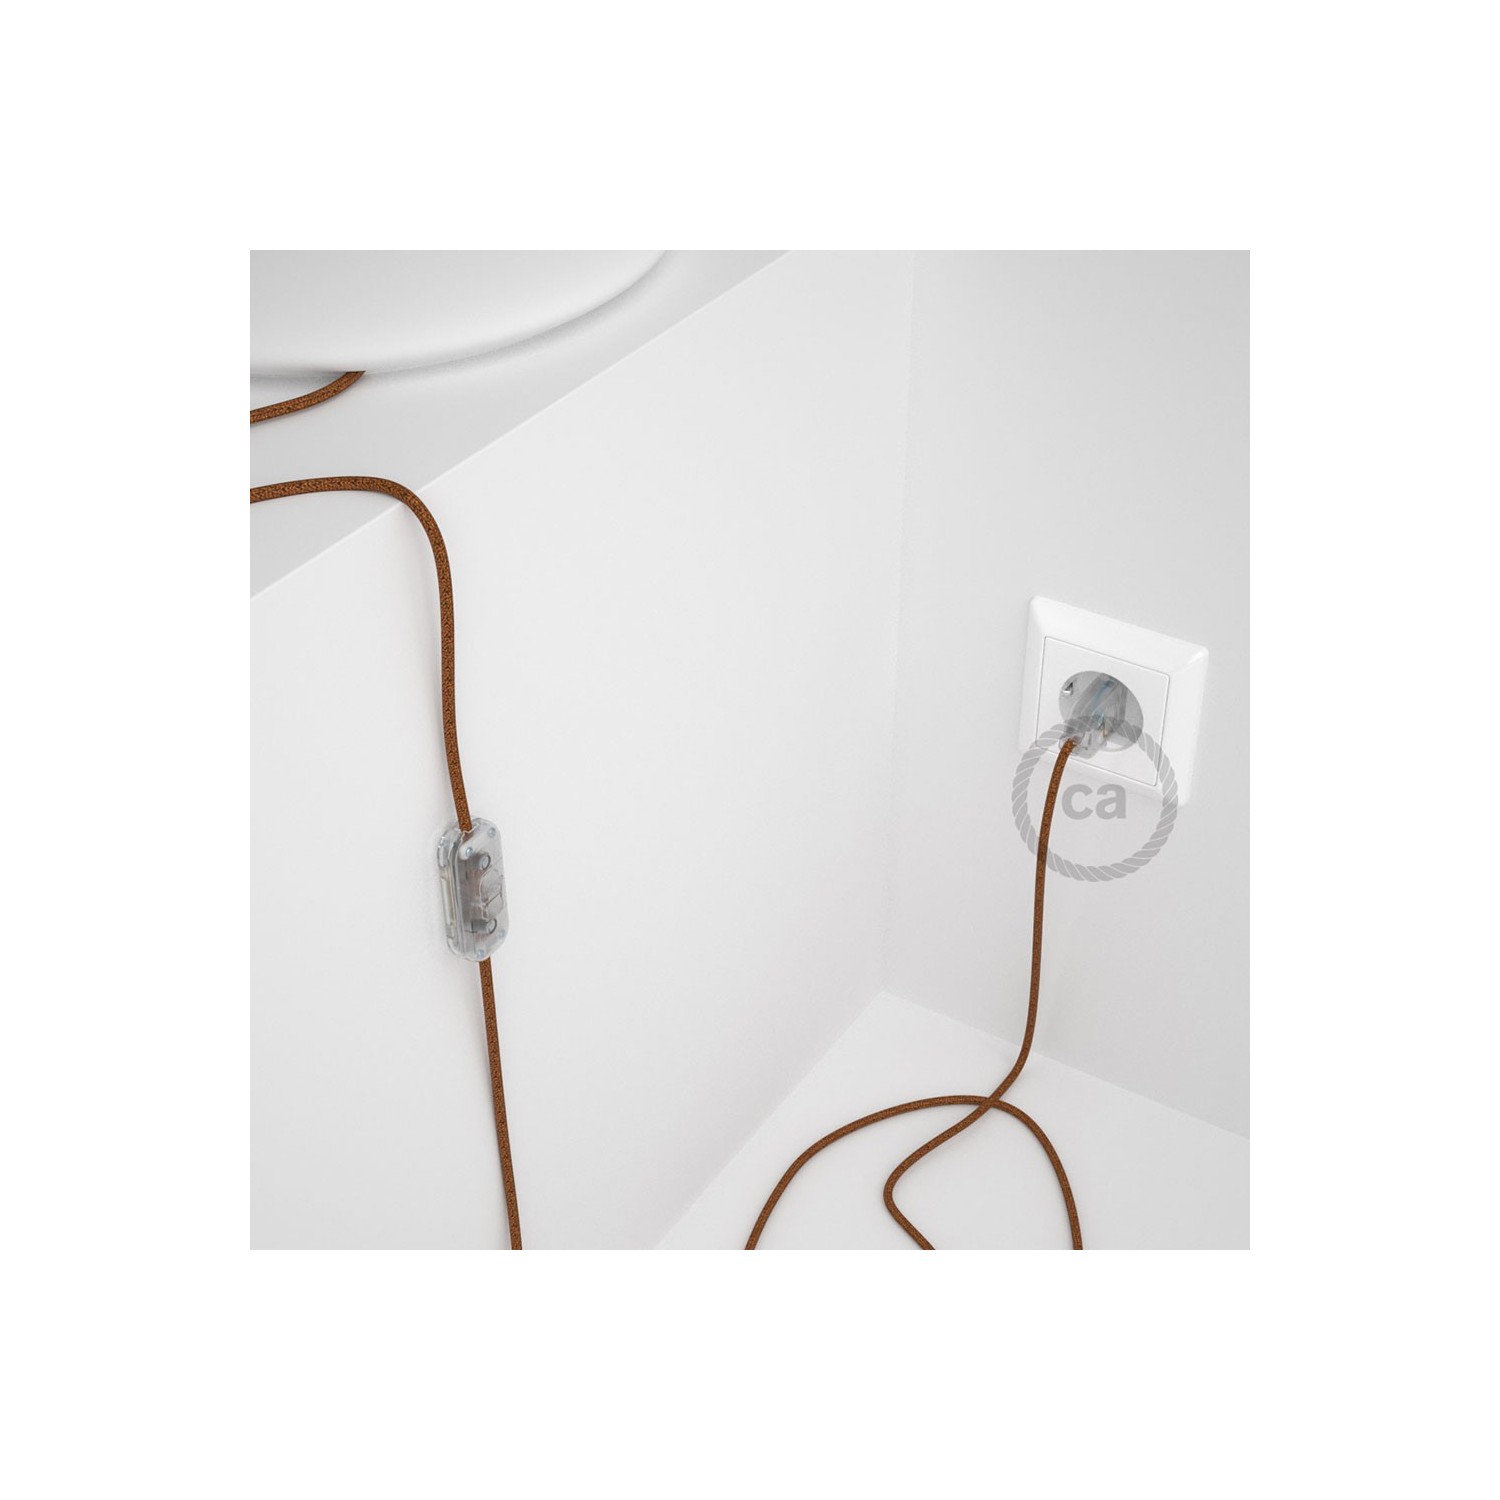 Cordon pour lampe, câble RL22 Effet Soie Paillettes Cuivre 1,80 m. Choisissez la couleur de la fiche et de l'interrupteur!